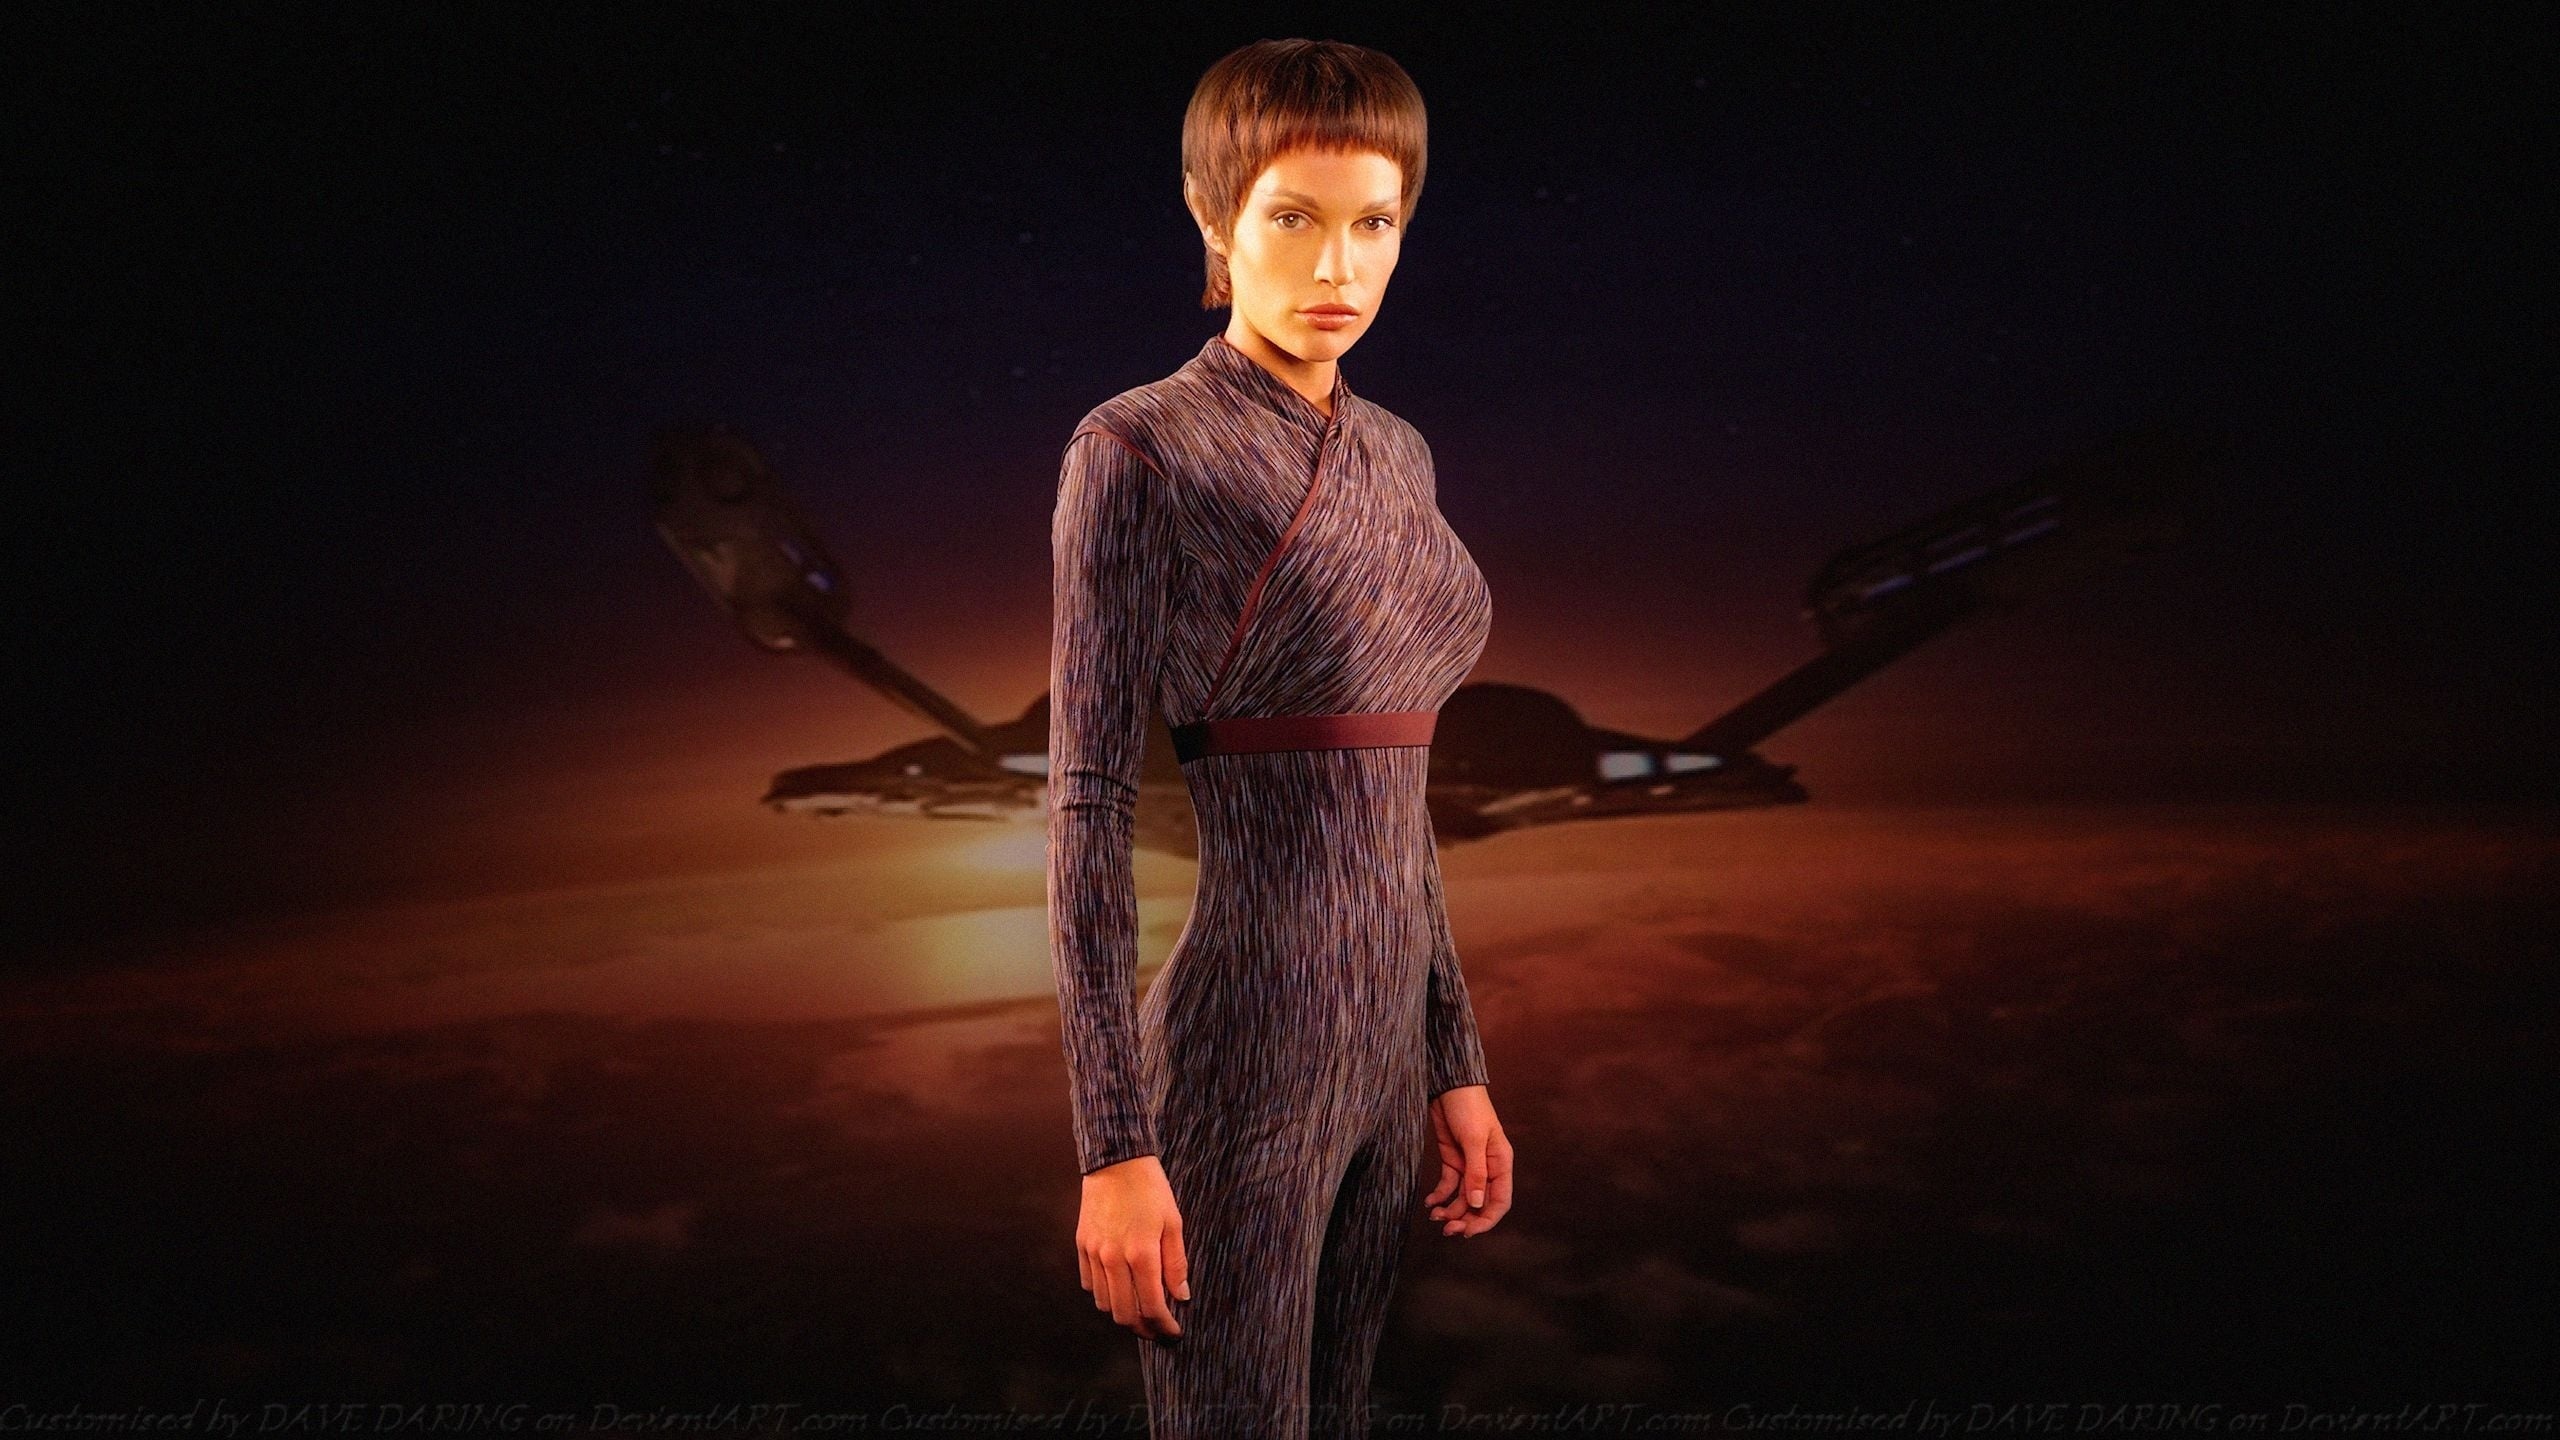 Enterprise (TV Series): T'Pol, A female Vulcan, Jolene Blalock, An American actress and model. 2560x1440 HD Wallpaper.